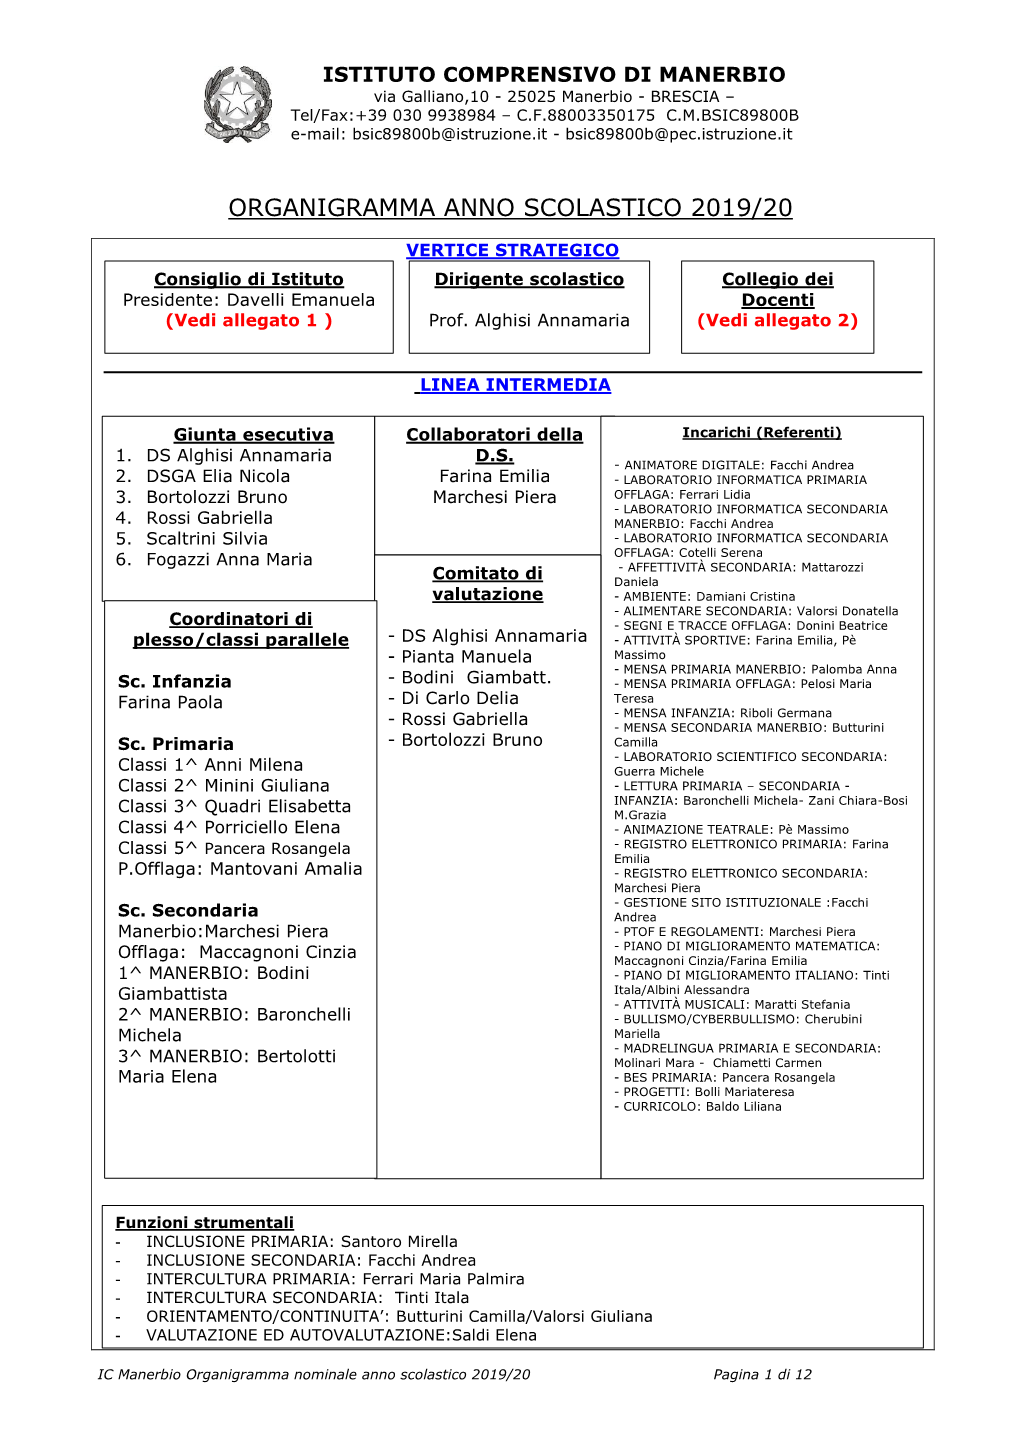 Organigramma Anno Scolastico 2003 / 04